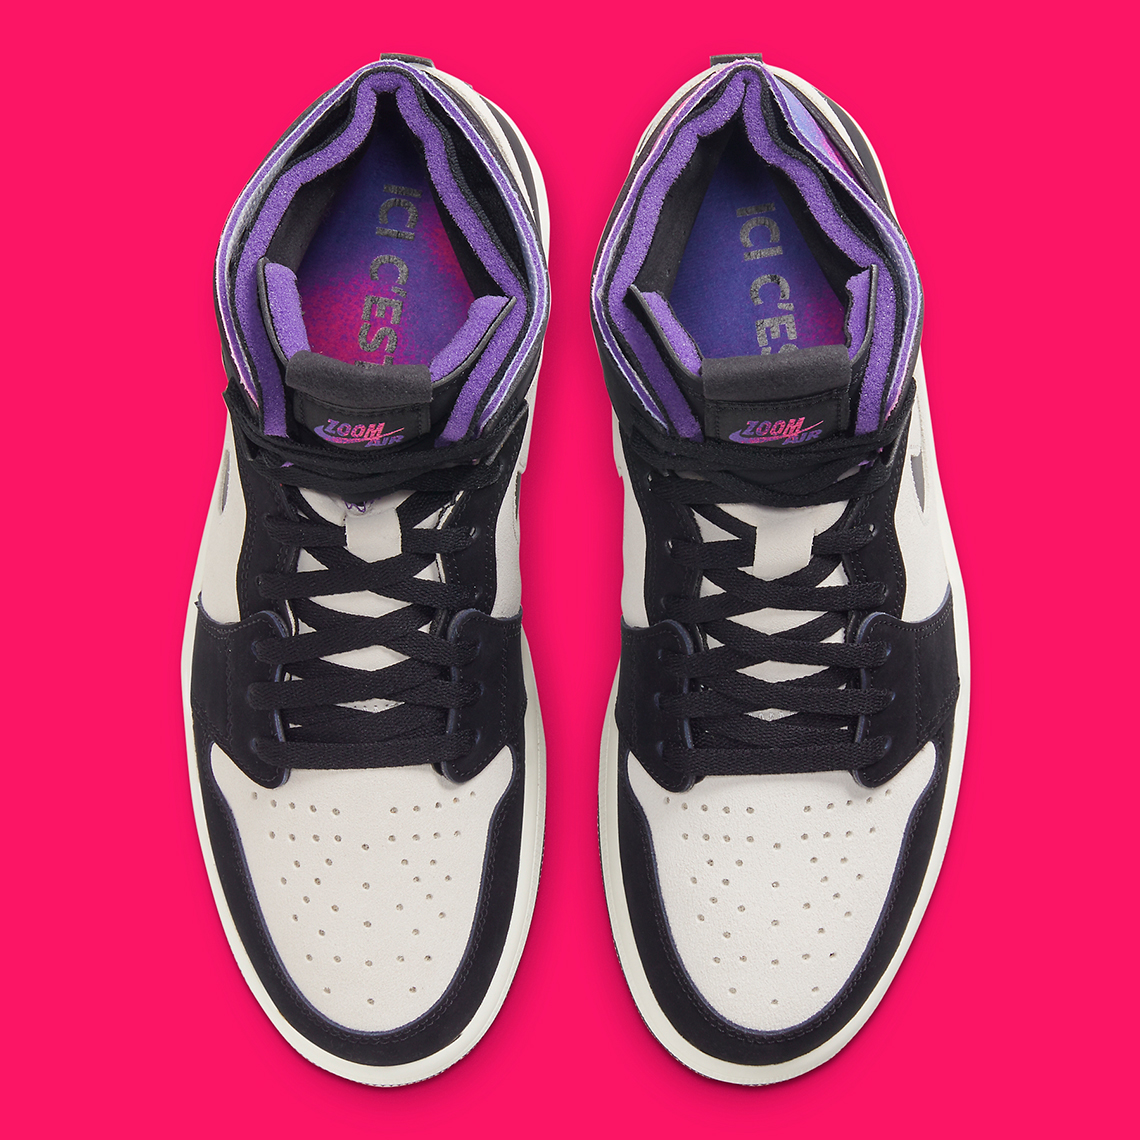 Psg Air Jordan 1 Zoom Cmft Db3610 105 Release Date Sneakernews Com